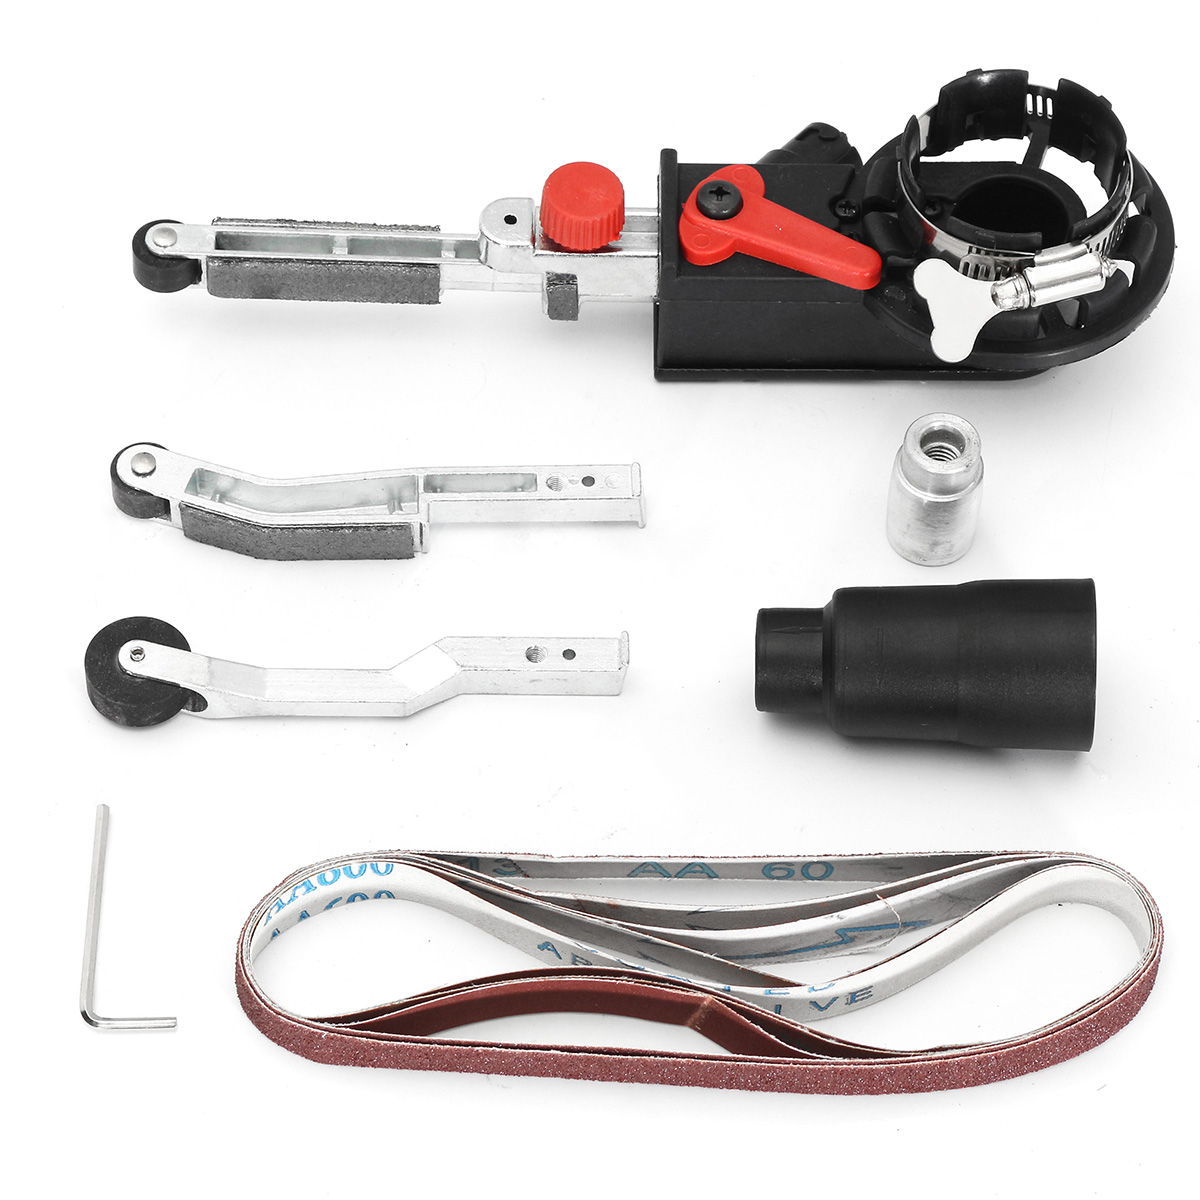 Drillpro-Sander-Sanding-Belt-Adapter-Grinder-Mini-Belt-Sander-Attachment-For-58-Inch-Thread-Spindle--1450264-3